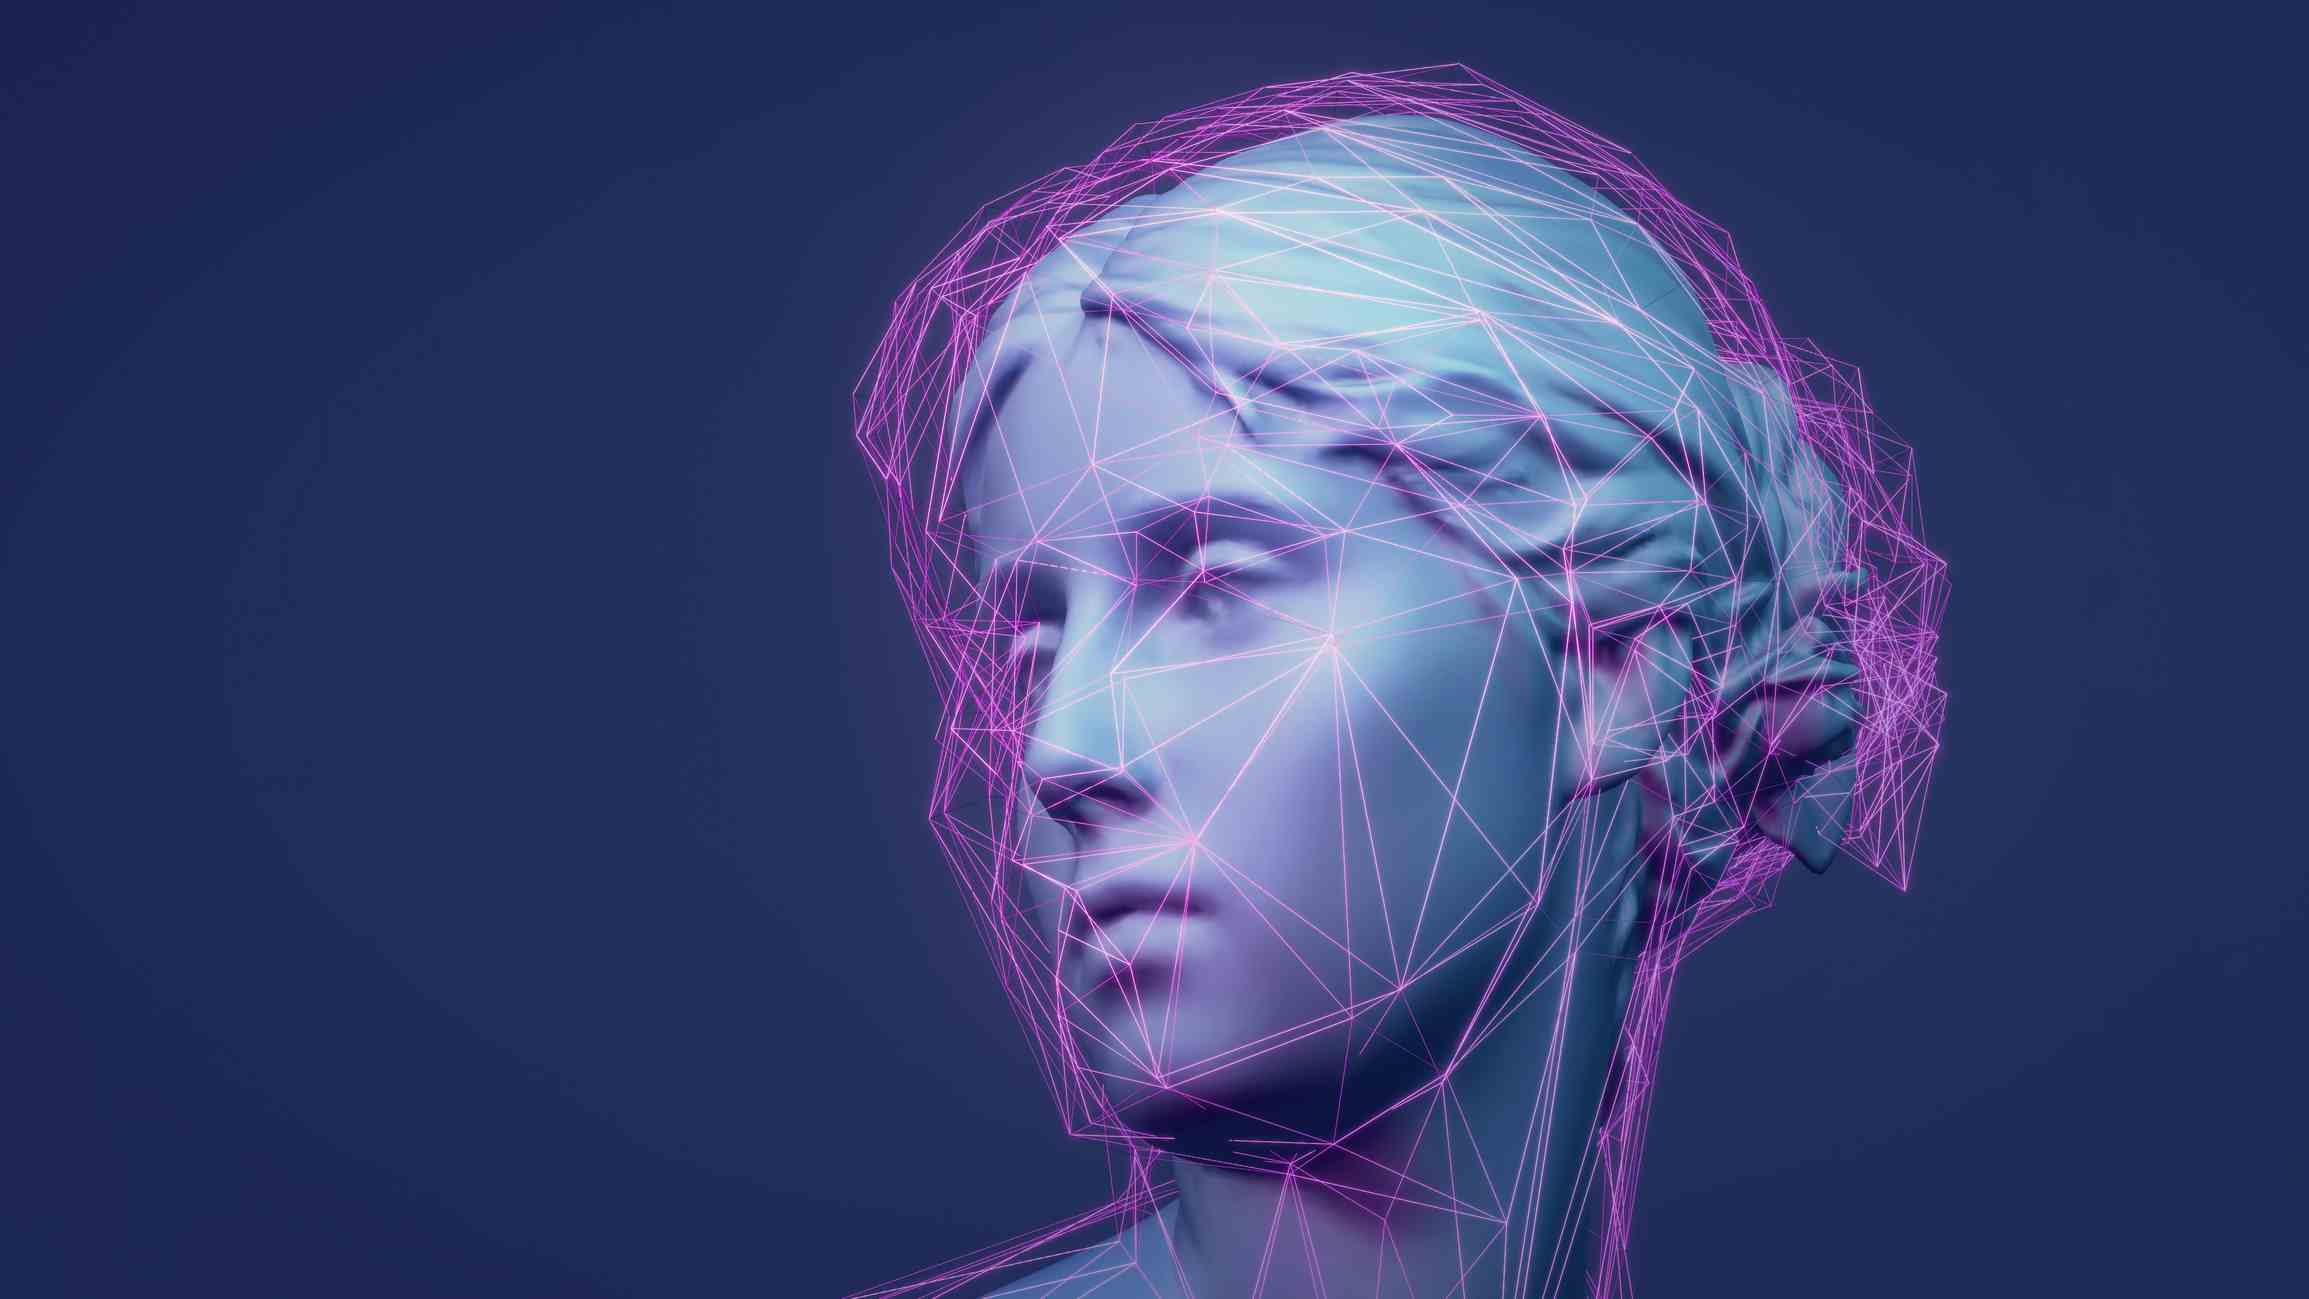 3D-gerenderte klassische Skulptur Metaverse-Avatar mit Netzwerk aus leuchtenden violetten Linien mit niedrigem Poly-Anteil.  Konzept für maschinelles Lernen und künstliche Intelligenz.  Beispiel für ein animiertes 3D-NFT-Artwork.  Hintergrund der Web 3.0-Technologie.